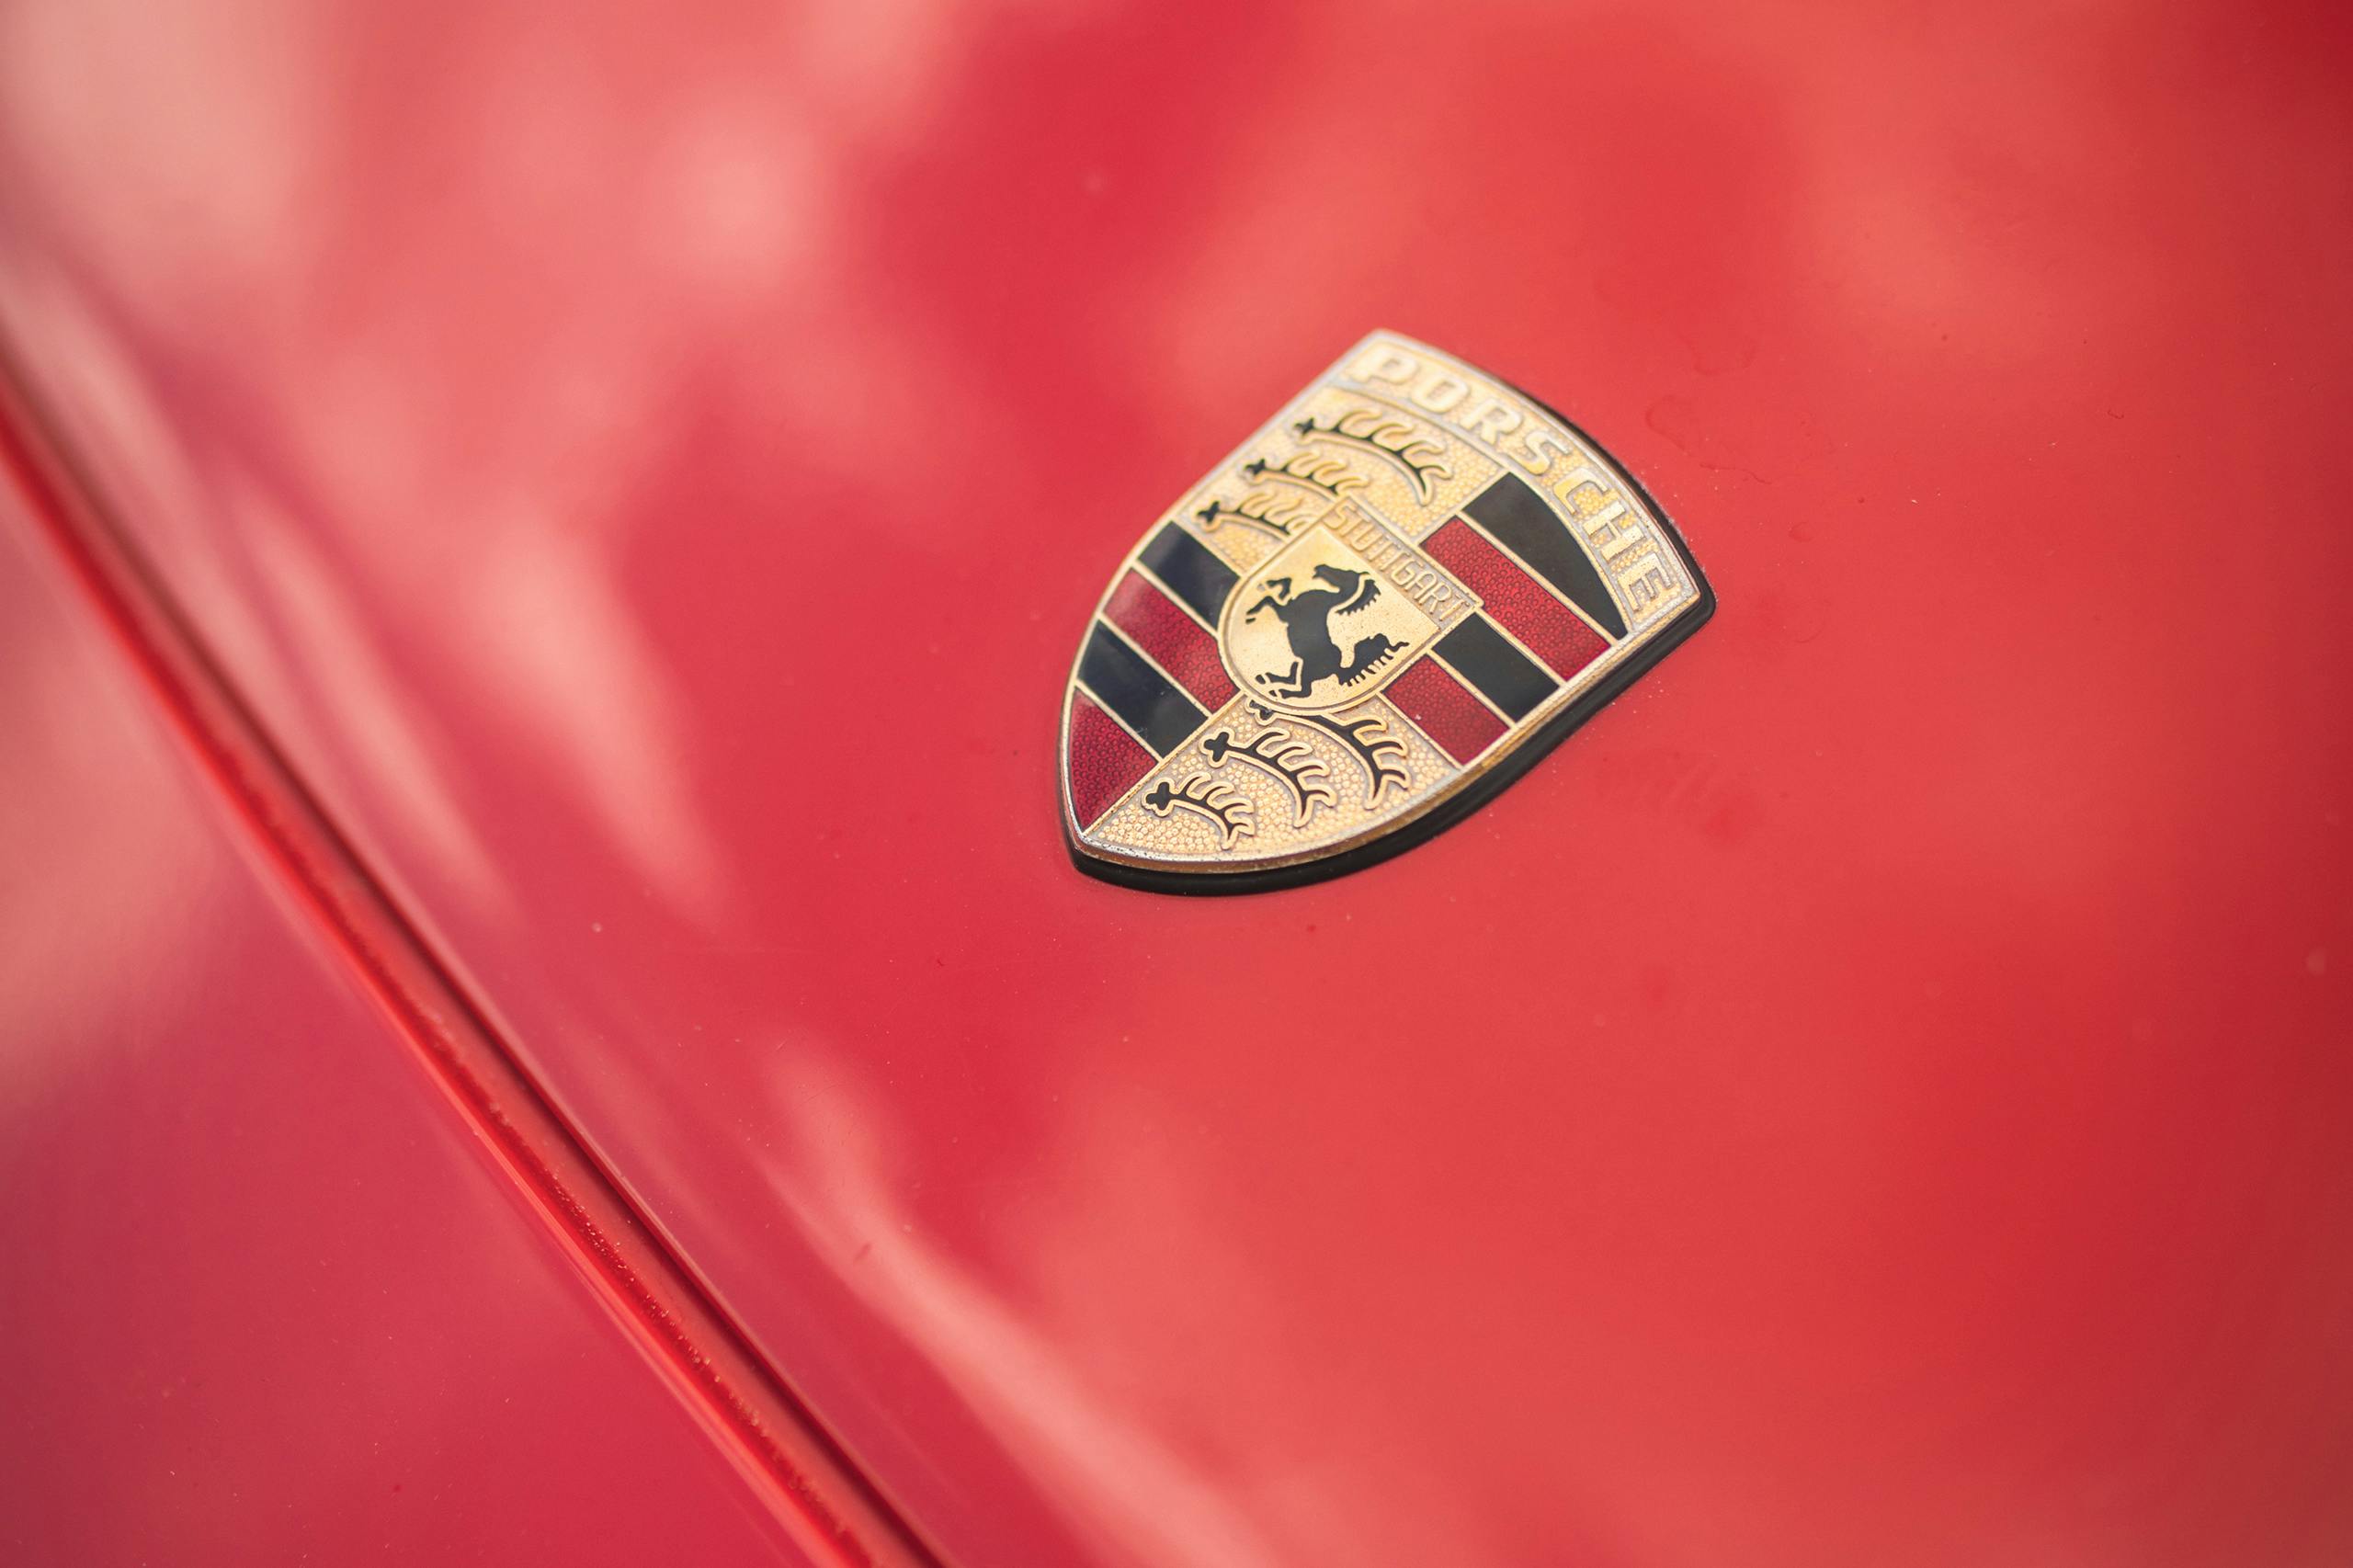 1993 Porsche 968 badge detail